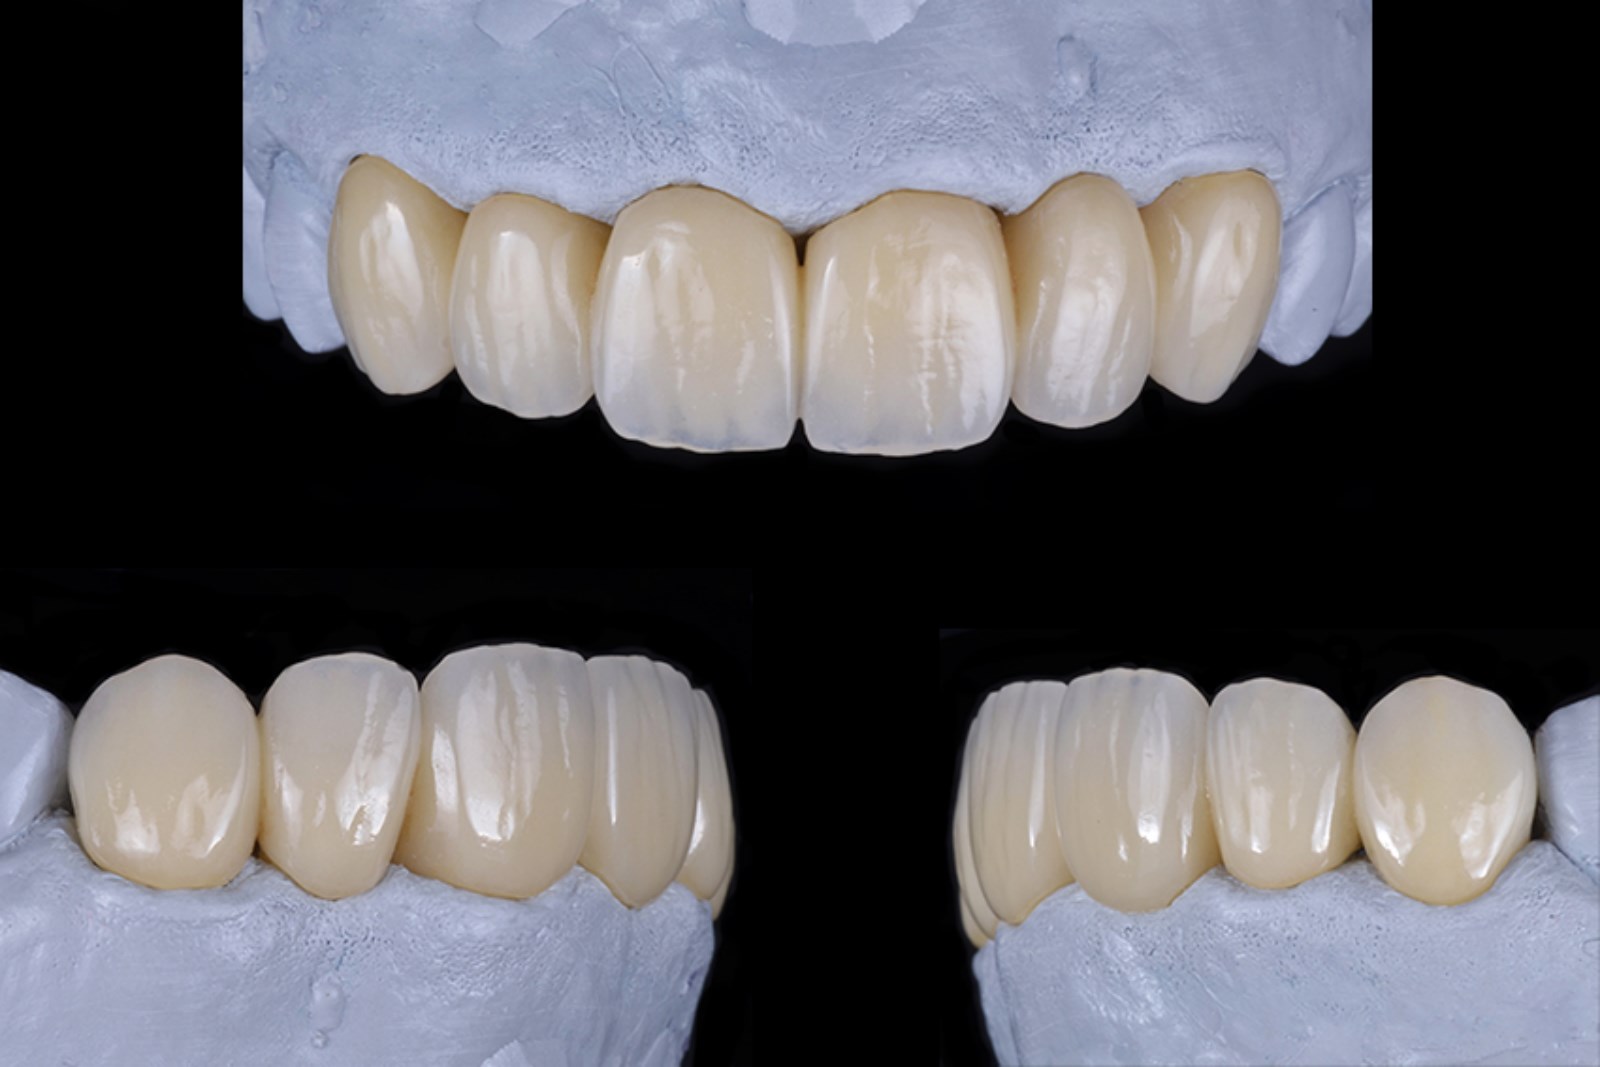 Bridge anterieur maxillaire surpressé…Parution ‘Prothèse Dentaire Française’ Mai/juin 2015 ( Dr Monleau J-d / Vitrolles)